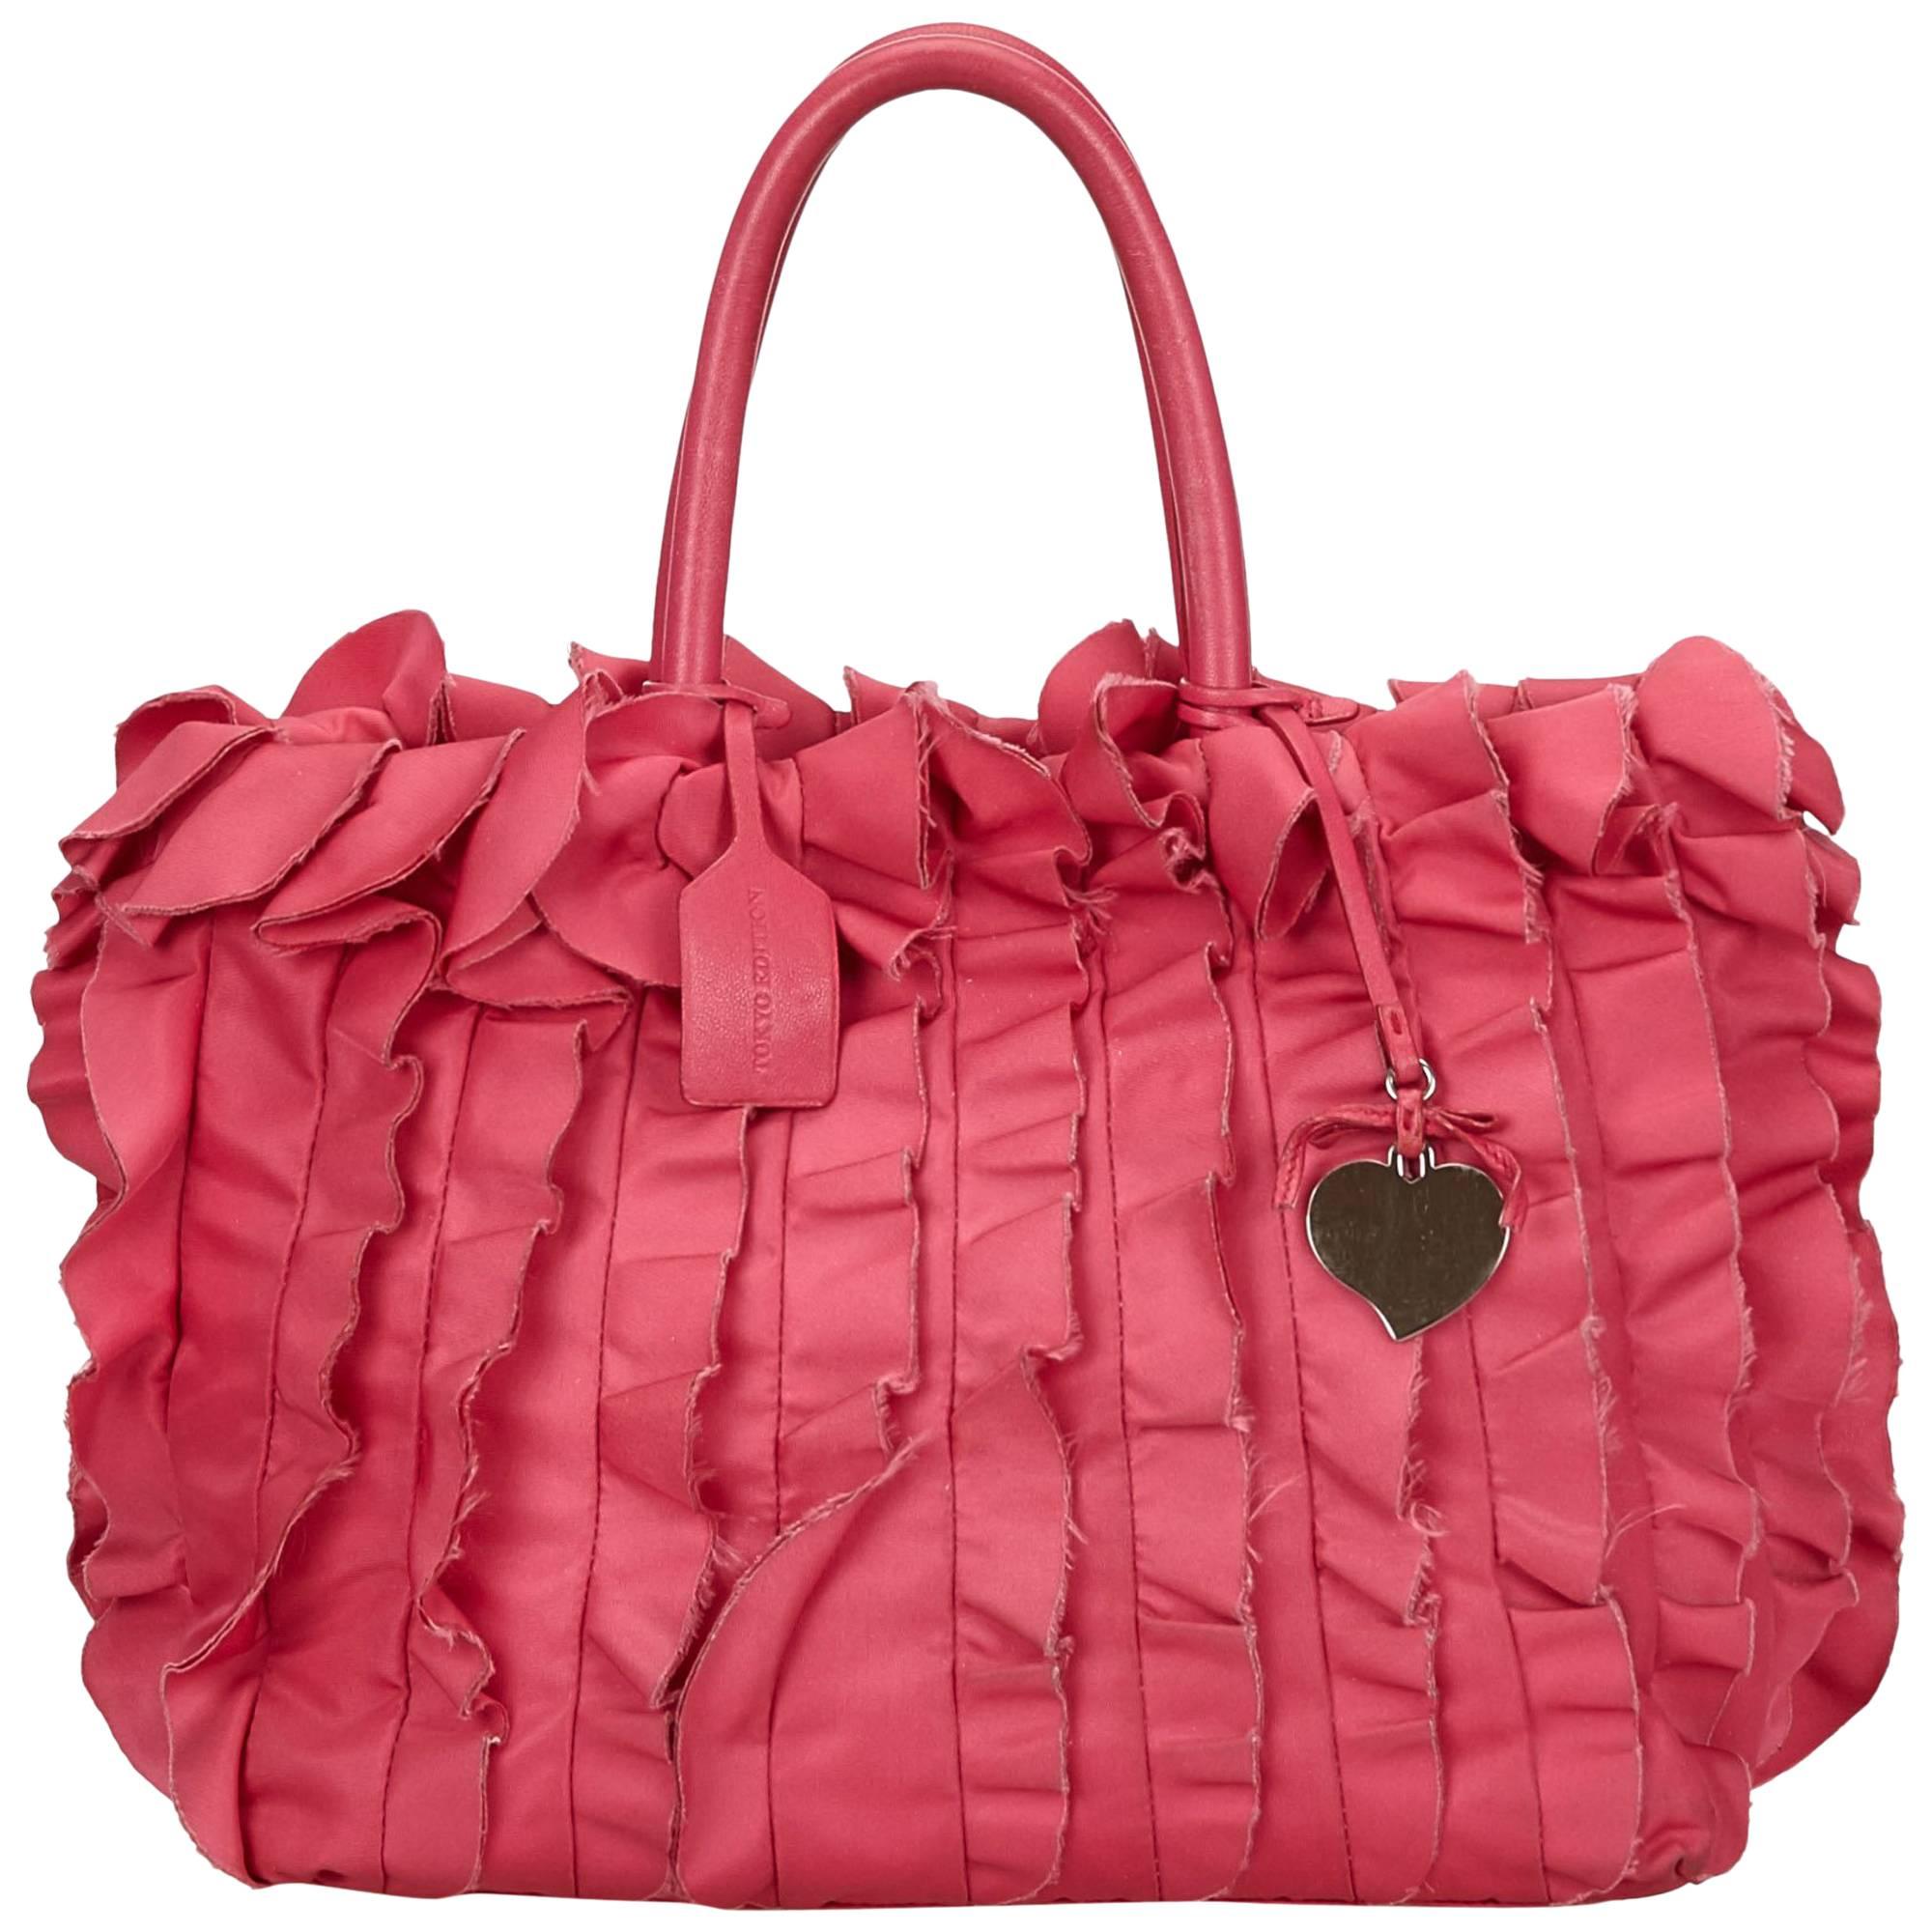 Prada Pink Satin Ruffle Tote Bag